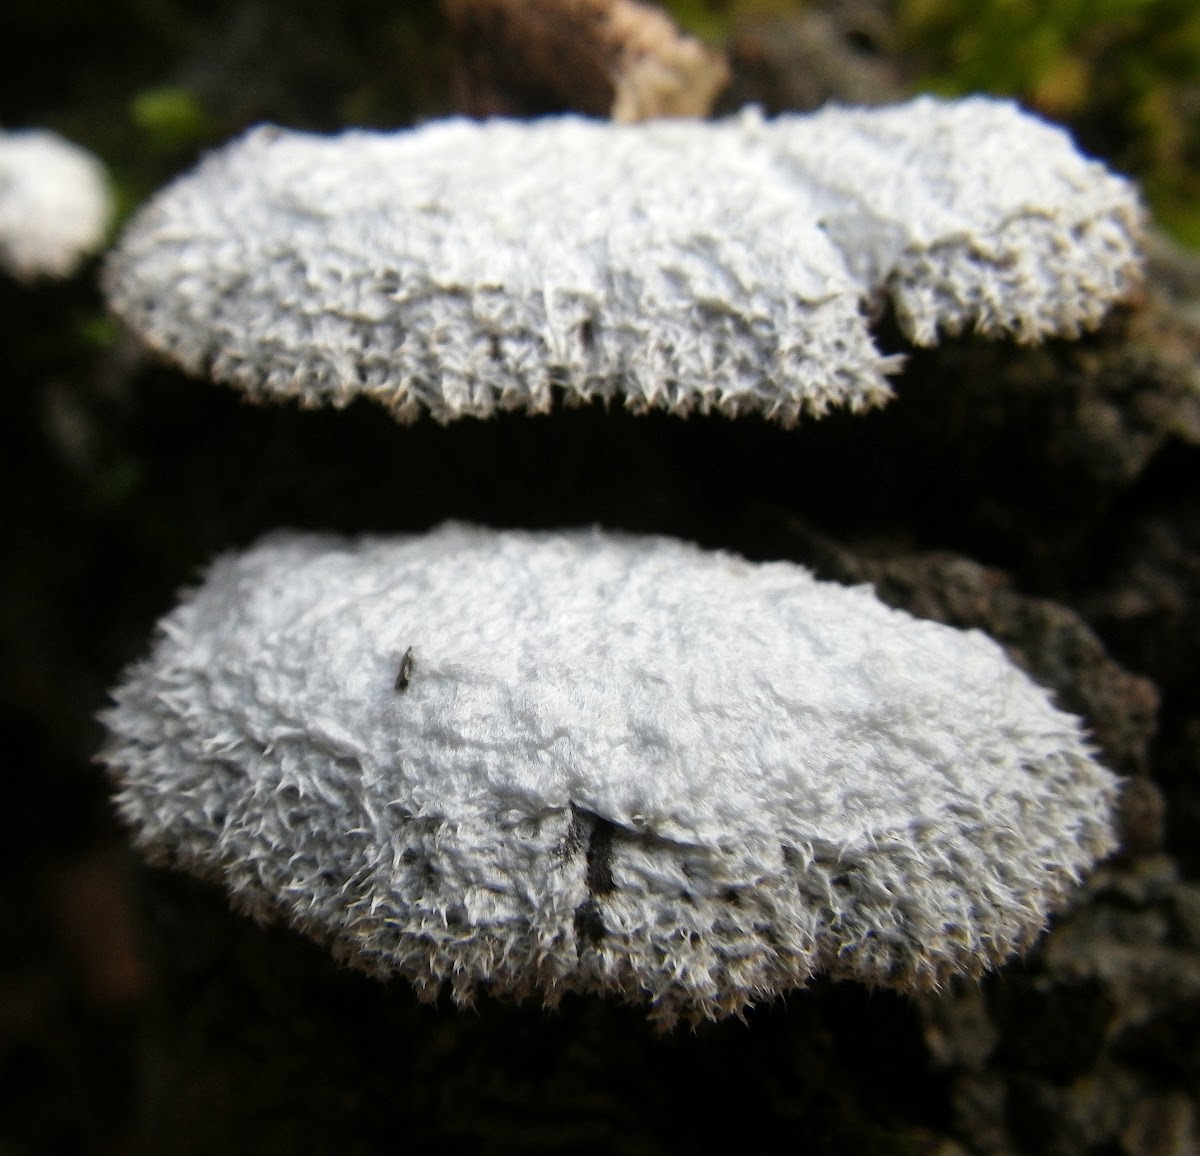 Splitgill Fungus